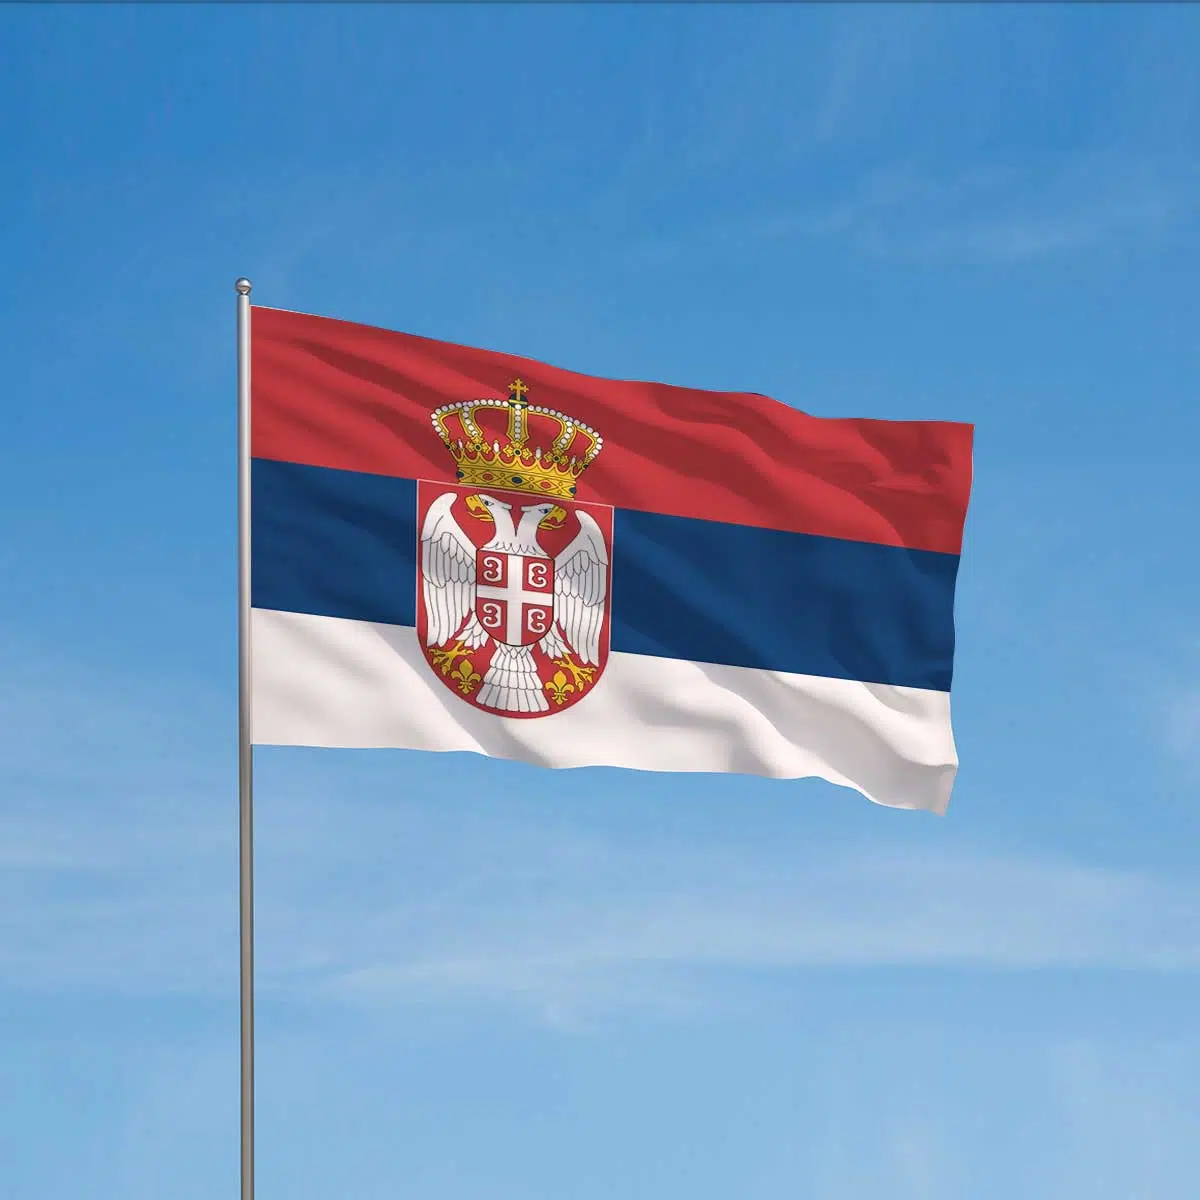 Anche la Serbia nel fronte anti-globalista